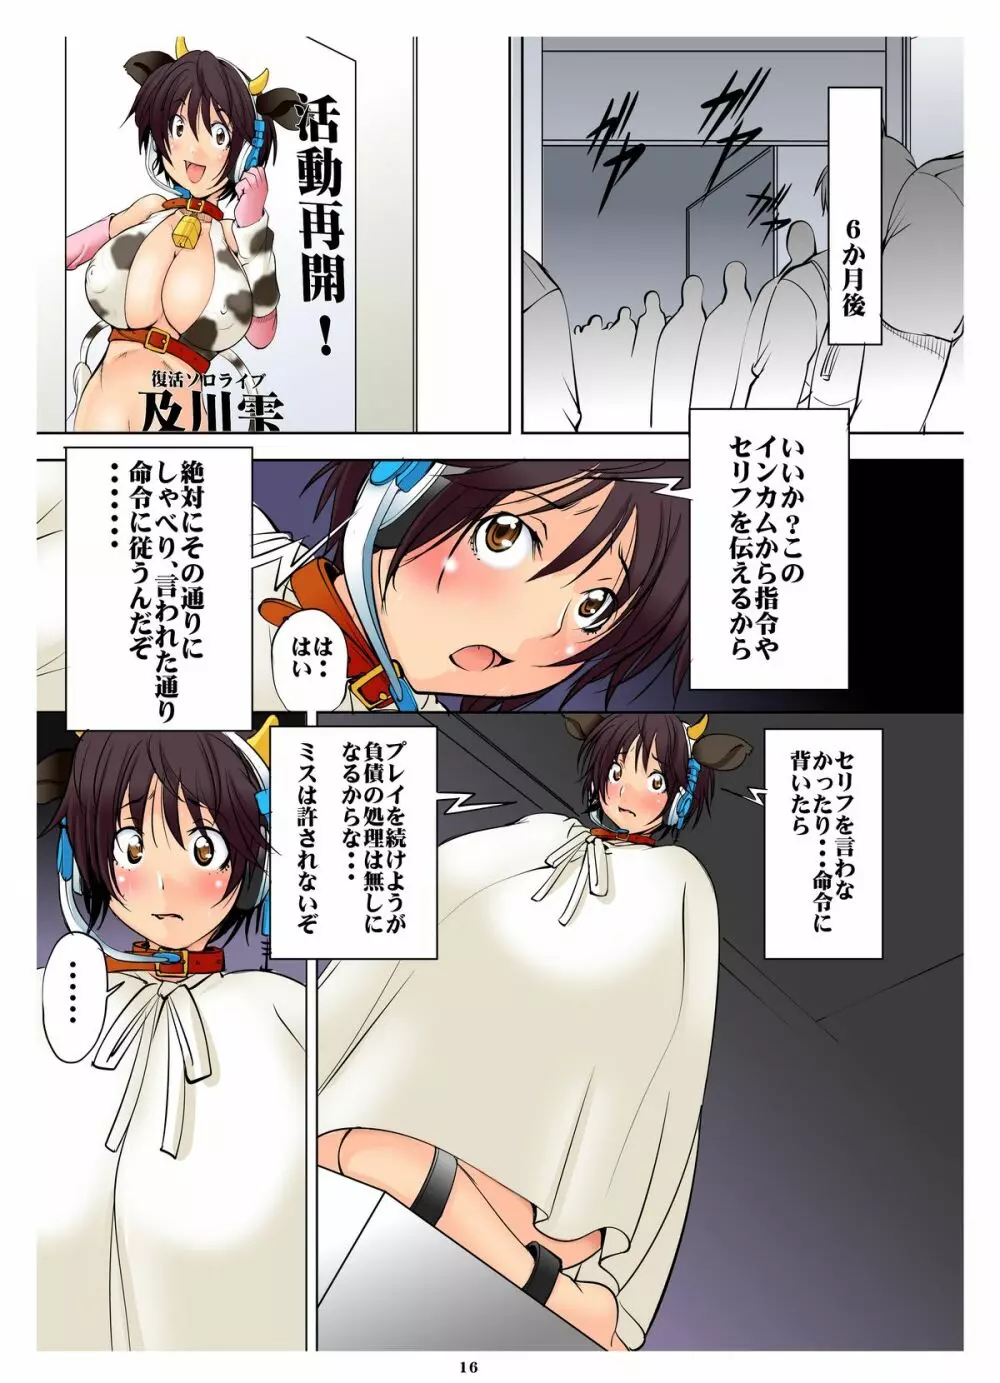 及川雫×人生破壊ショー - page16